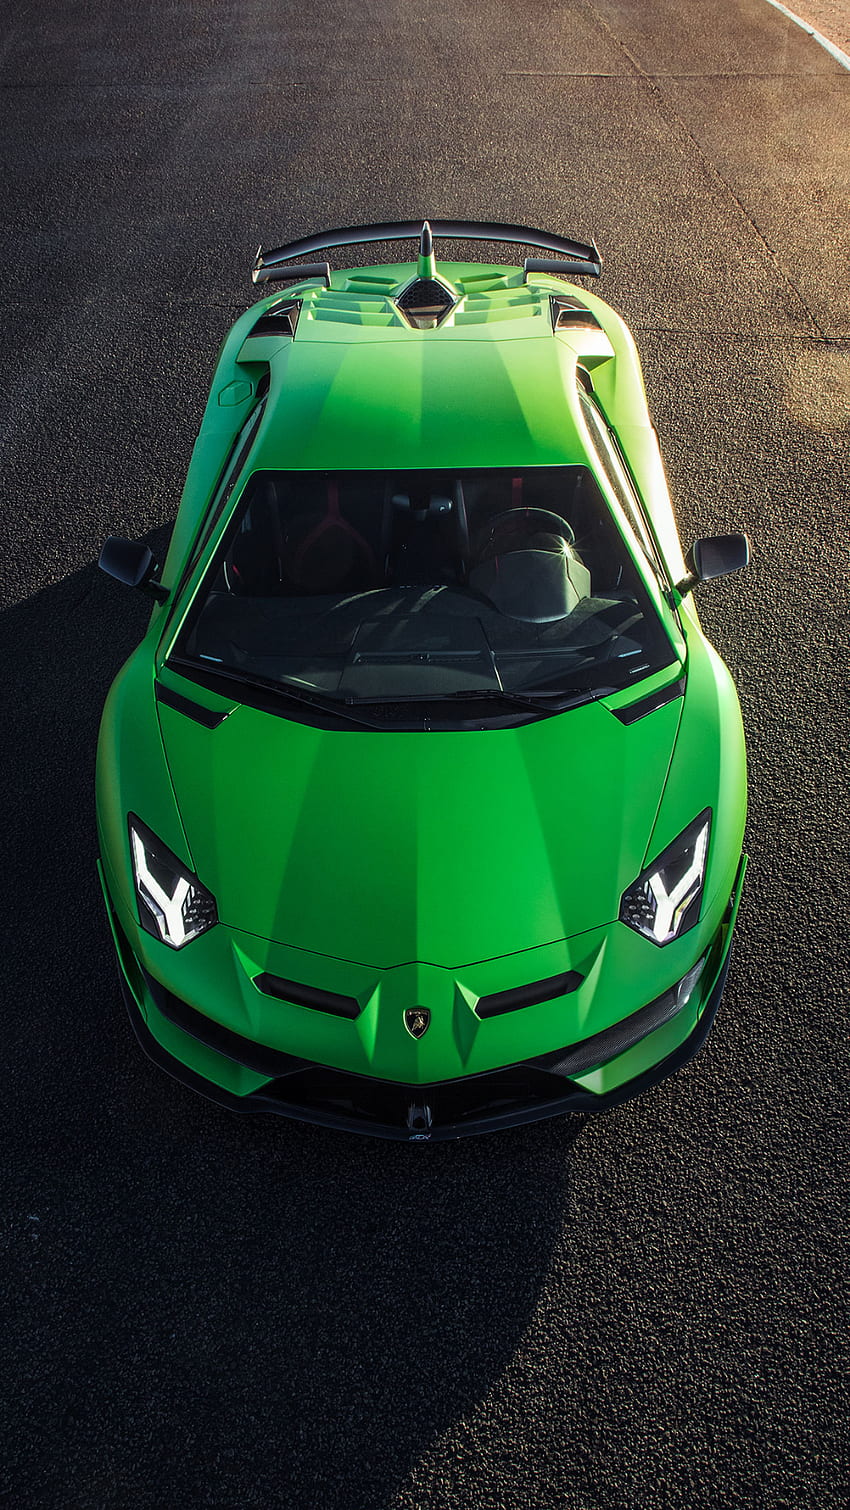 lamborghini svj in 2020. Lamborghini aventador, Luxury car, Sports cars luxury, Green Lamborghini Aventador fondo de pantalla del teléfono